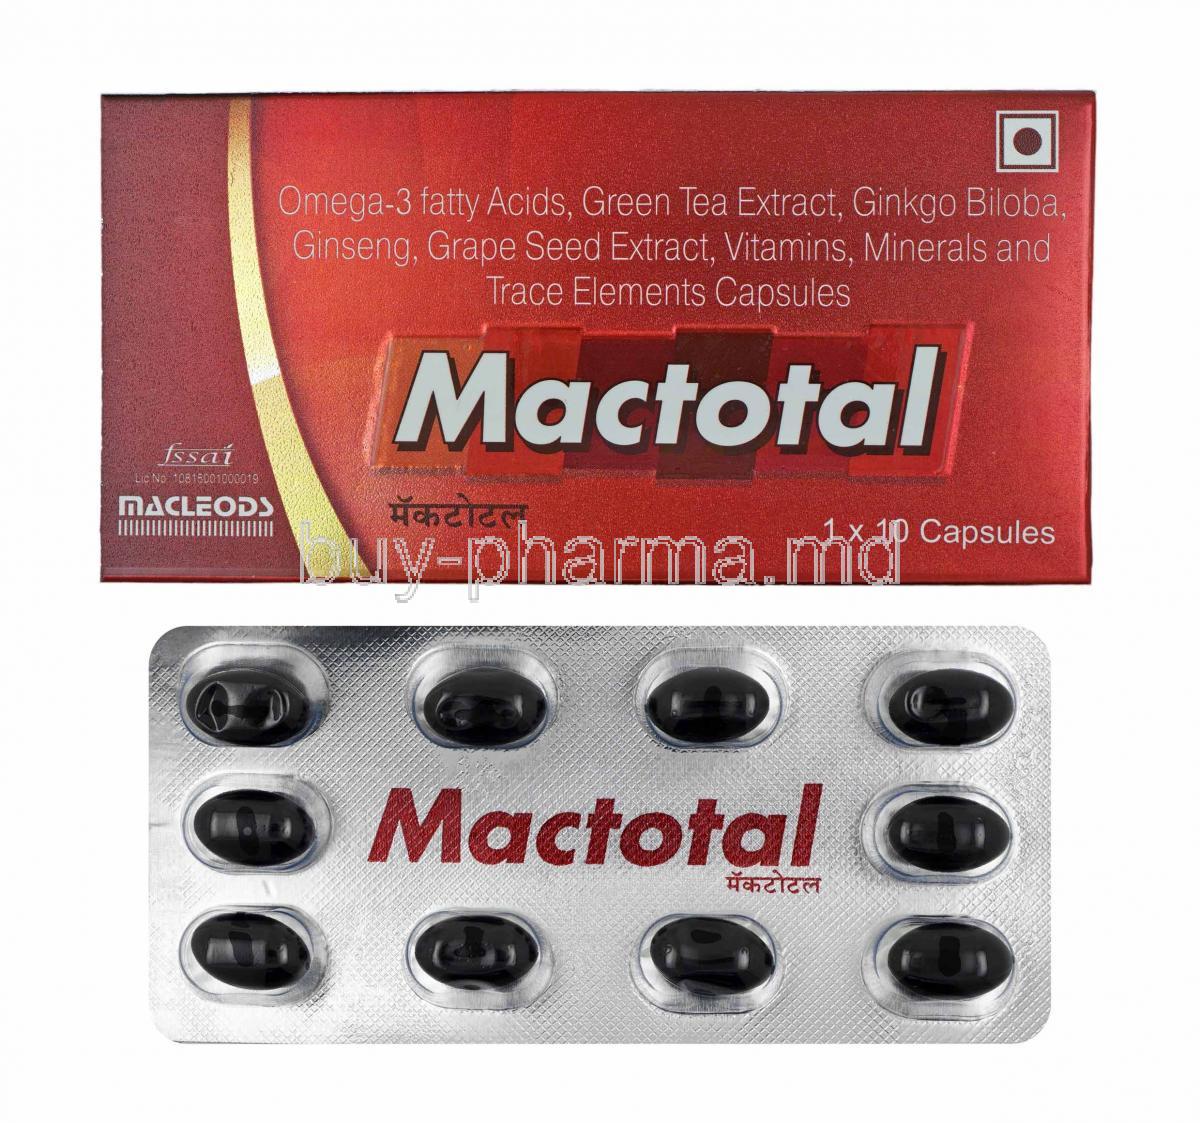 Mactotal box and capsules